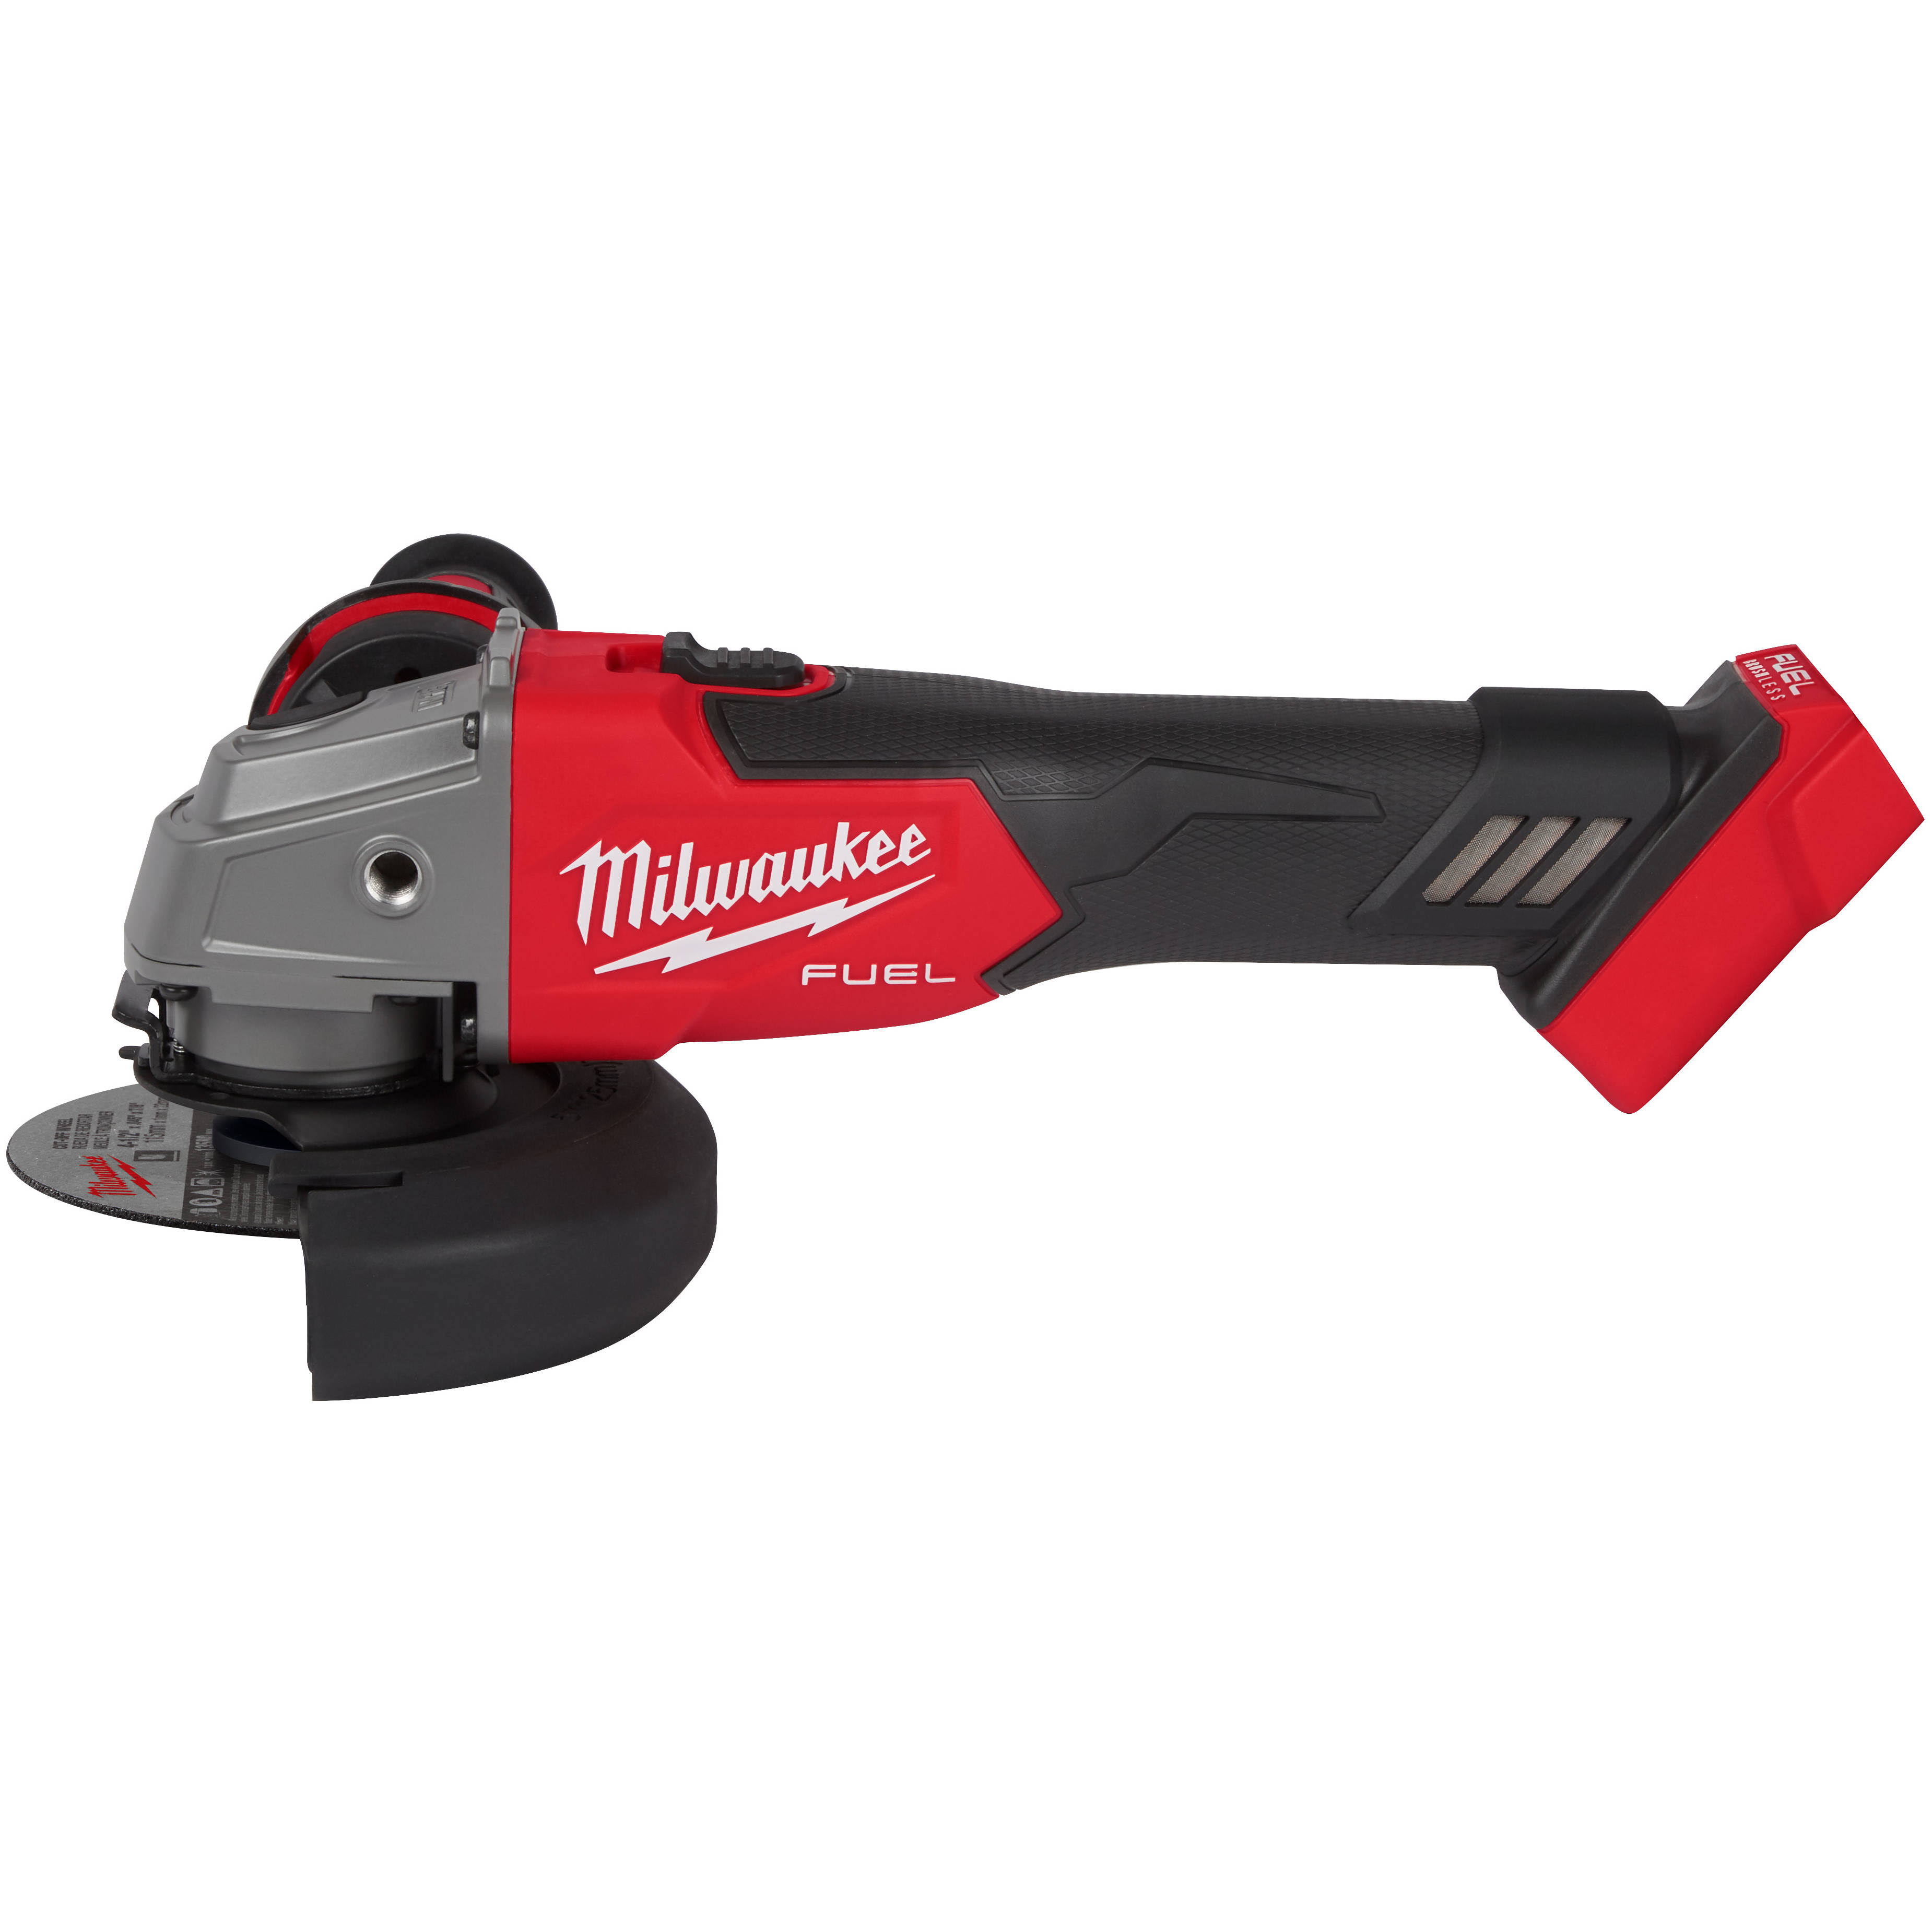 Milwaukee Tool 2881-20 M18 Fuel 4-1/2" / 5" Grinder Slide Switch, Lock-On